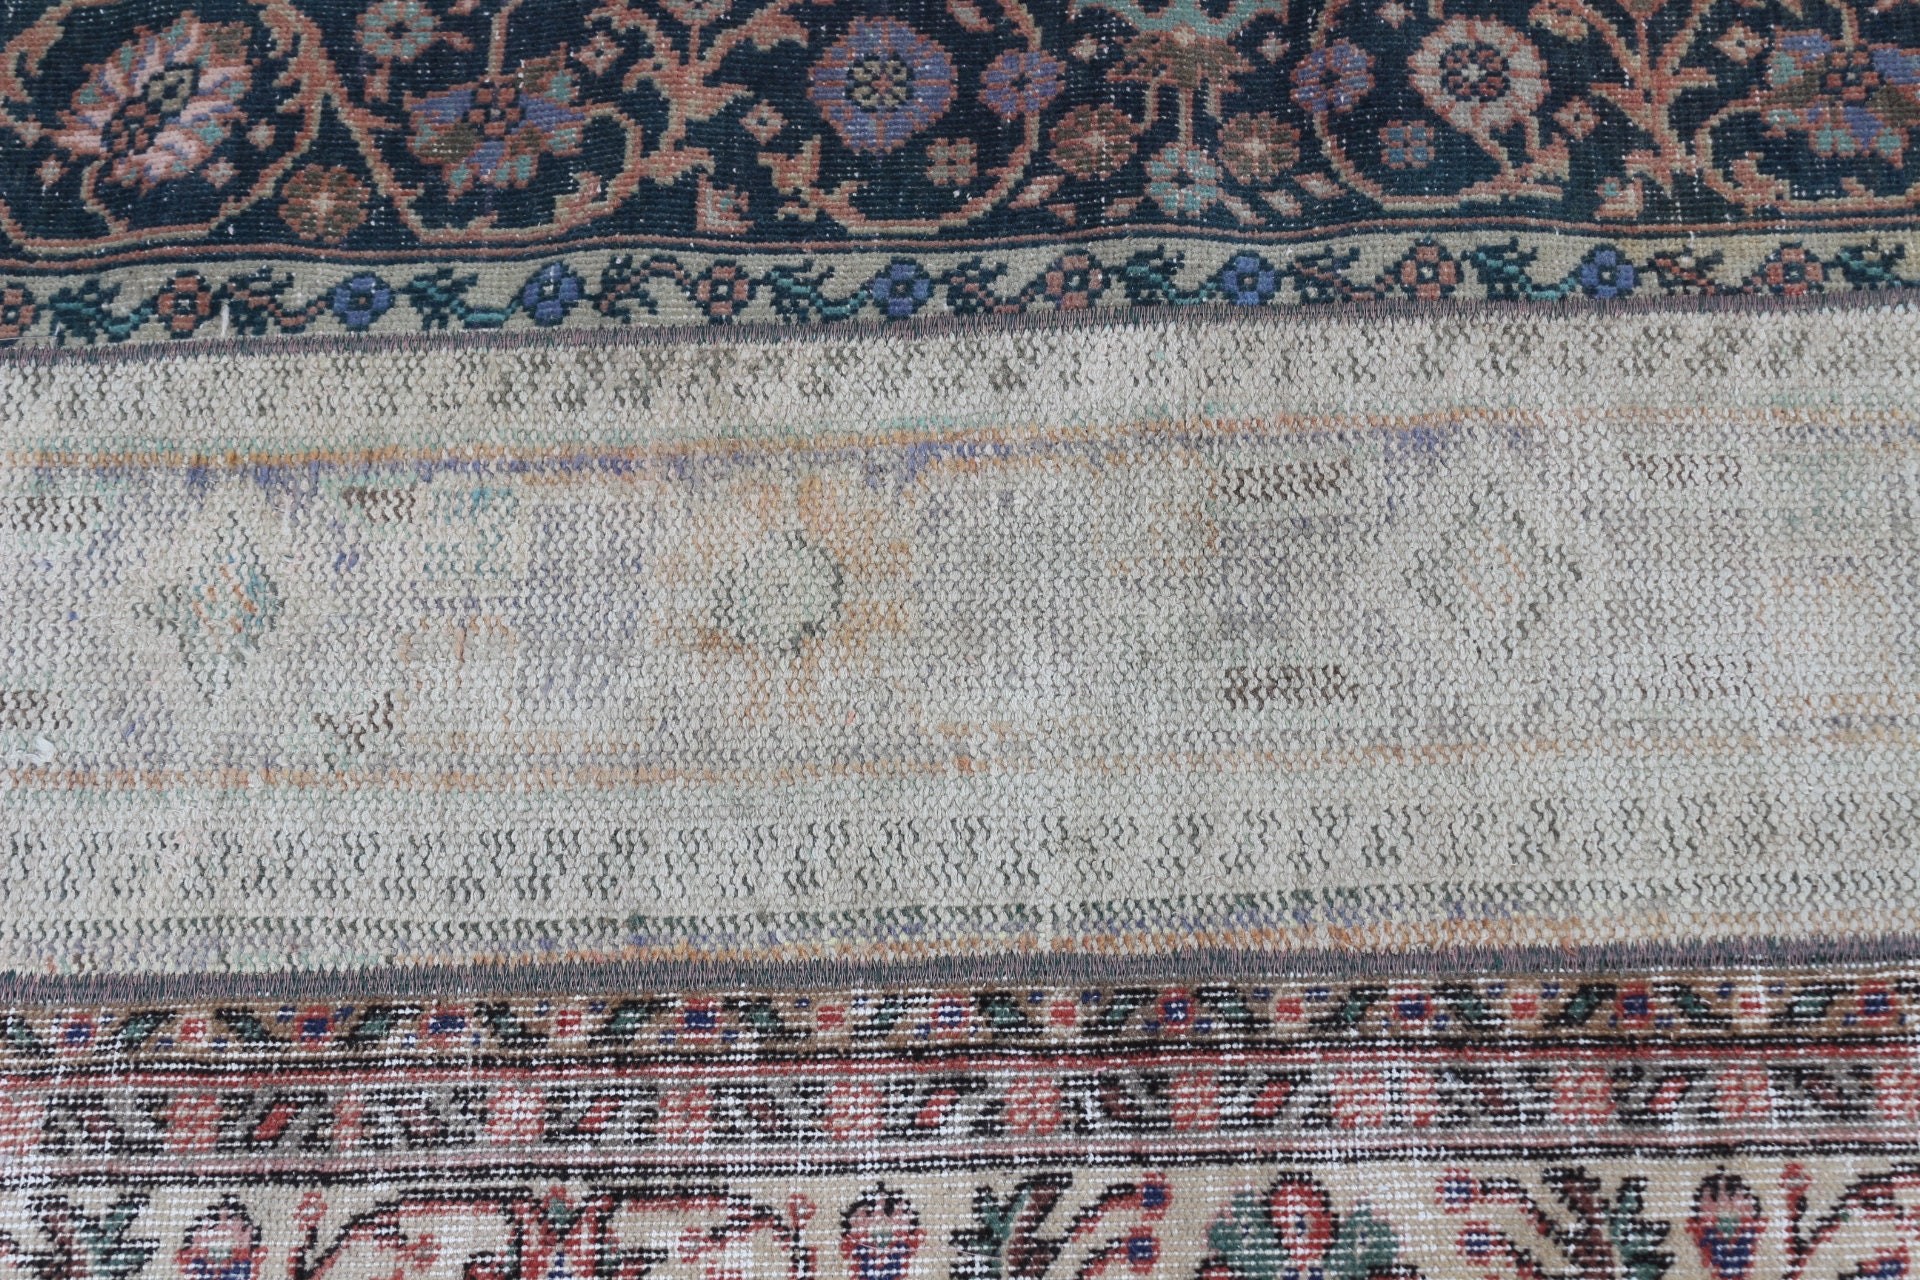 Turkish Rugs, Vintage Rug, Rugs for Stair, Stair Rug, Oriental Rug, Kitchen Rug, Beige  2.7x8.5 ft Runner Rug, Antique Rugs